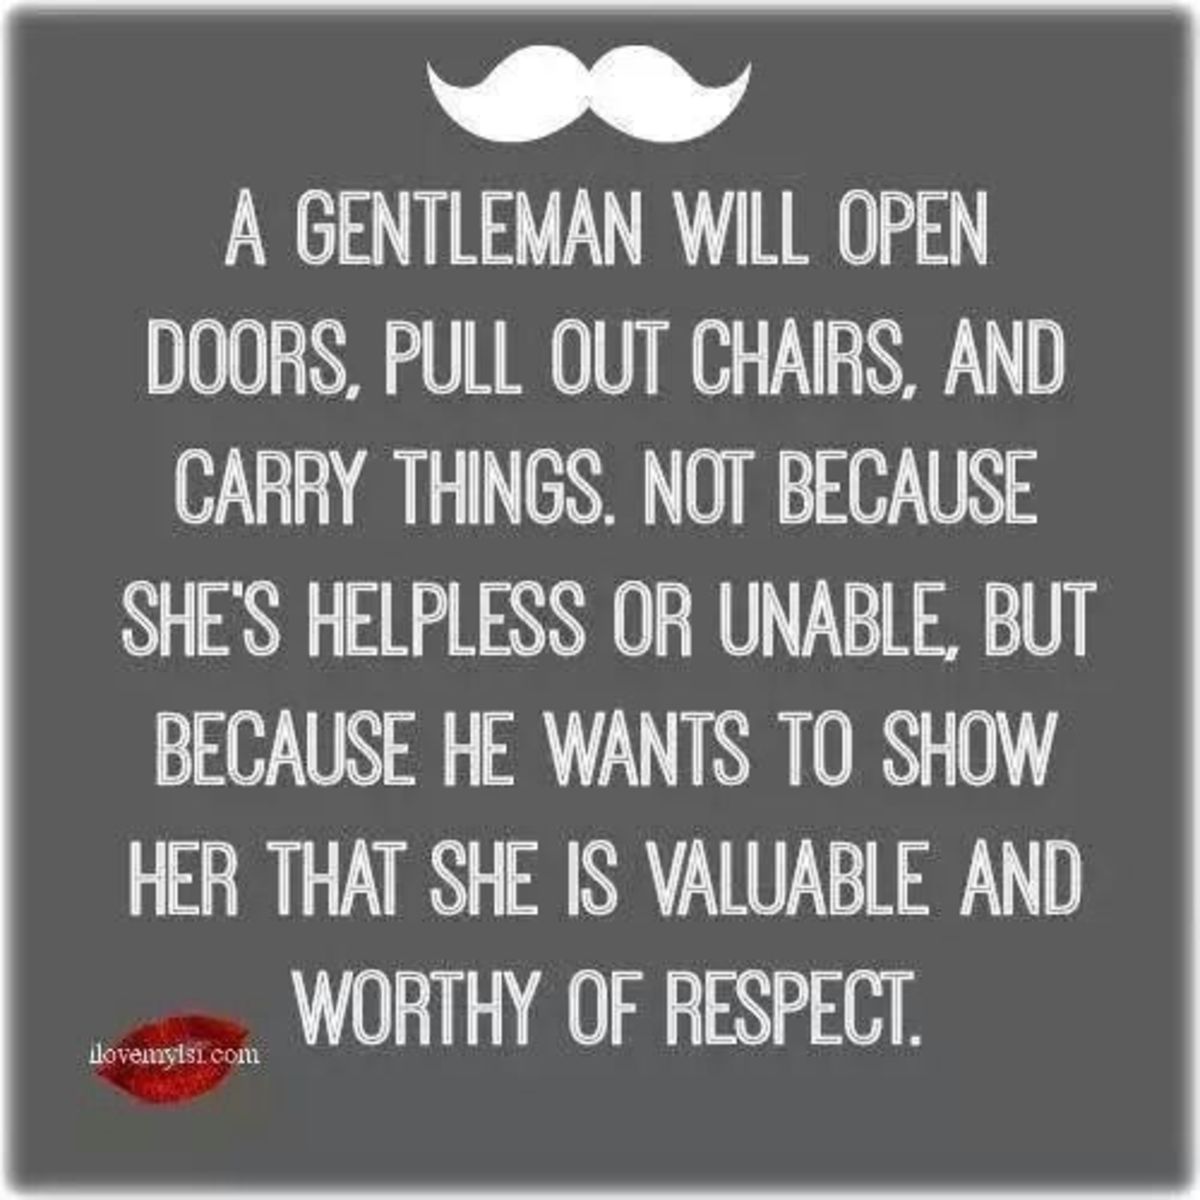 A gentlemen does sweet things.